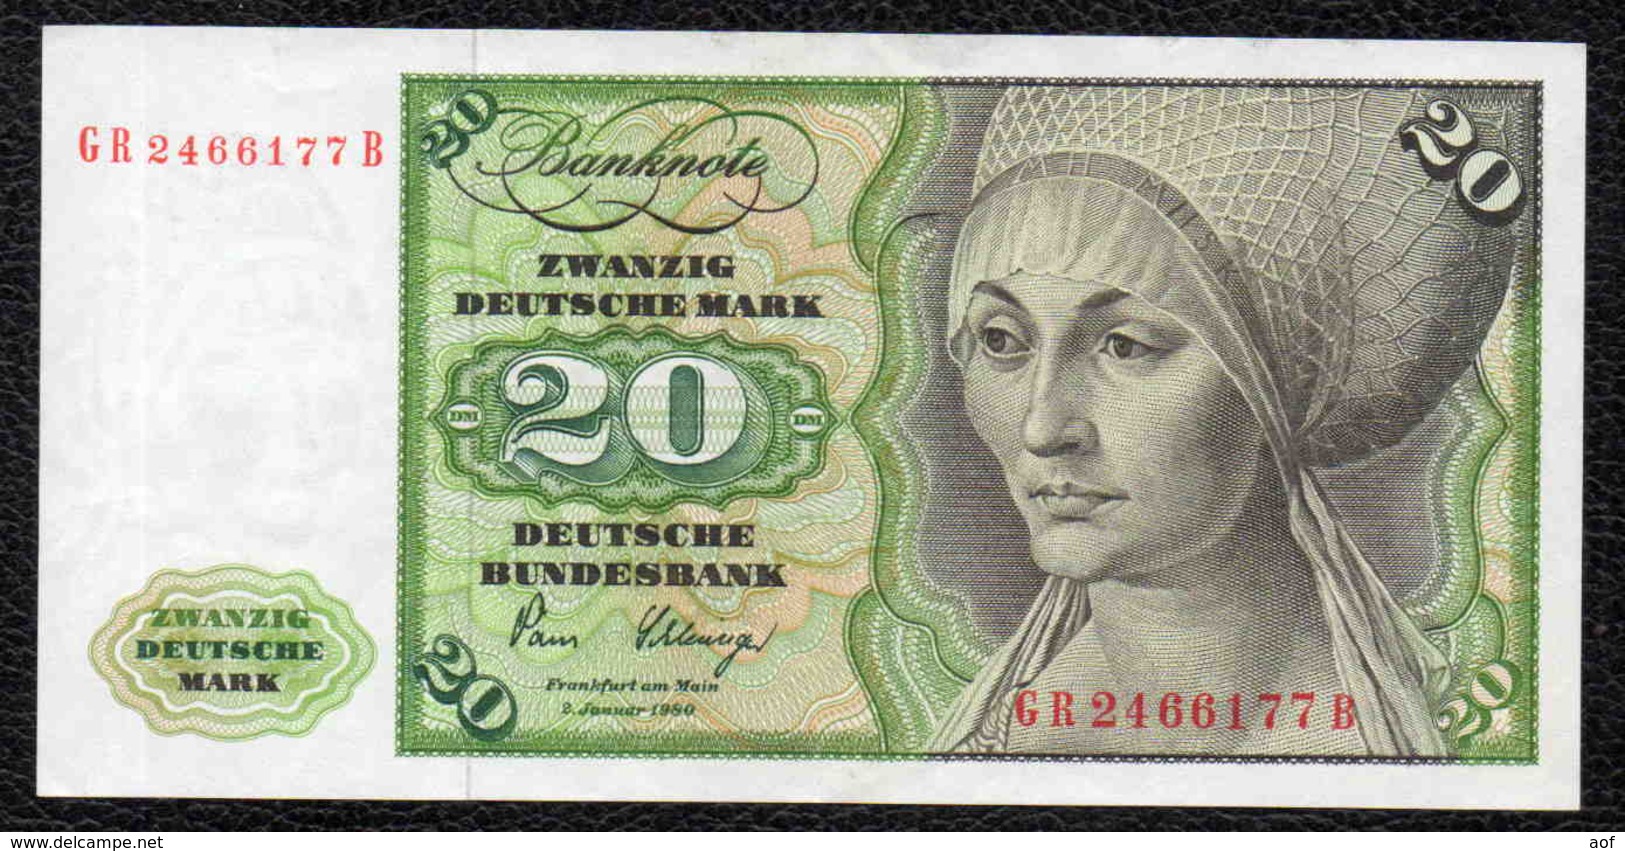 10 Marks - 20 Deutsche Mark